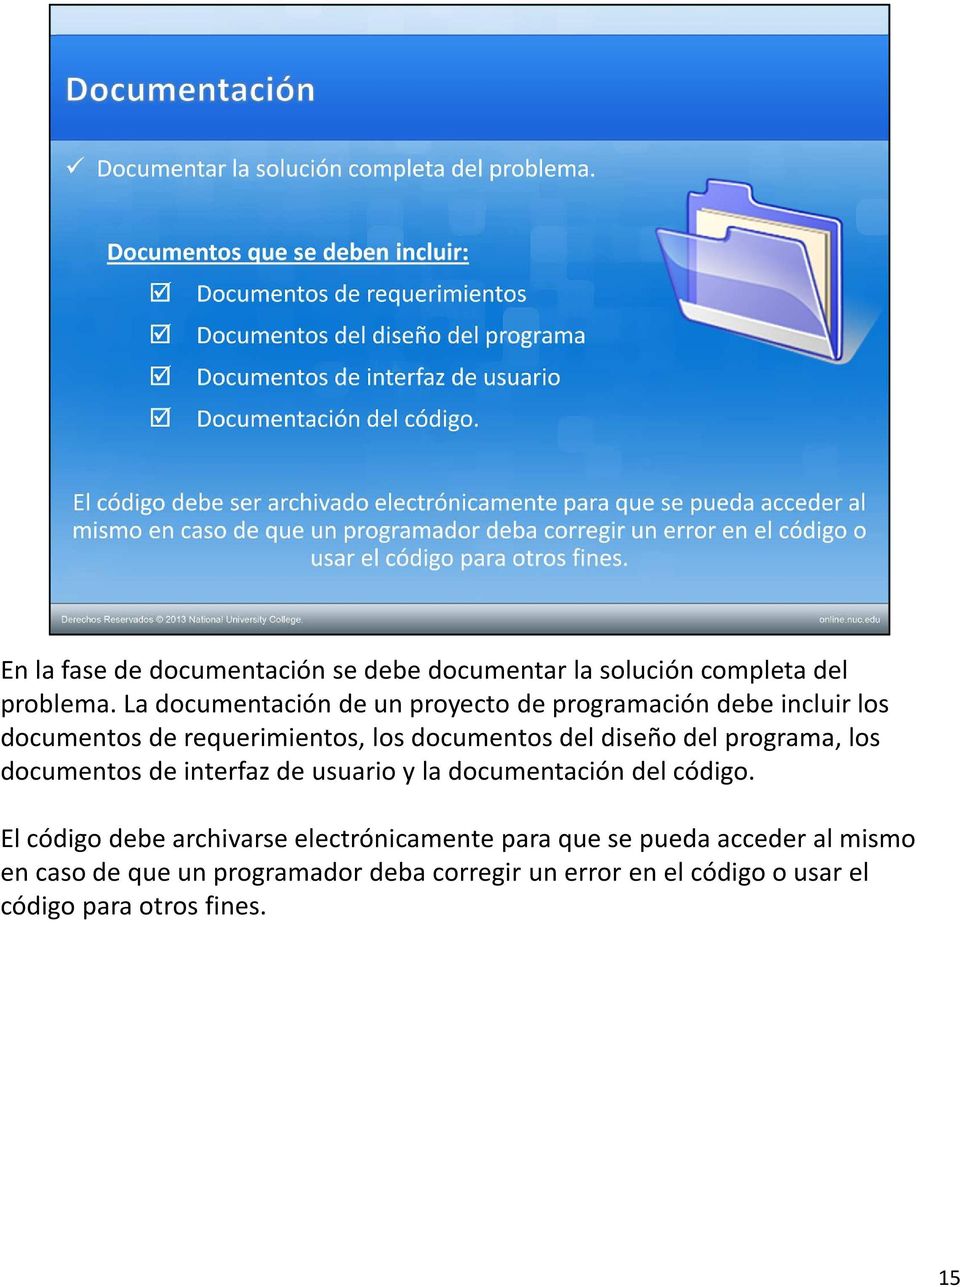 diseño del programa, los documentos de interfaz de usuario y la documentación del código.